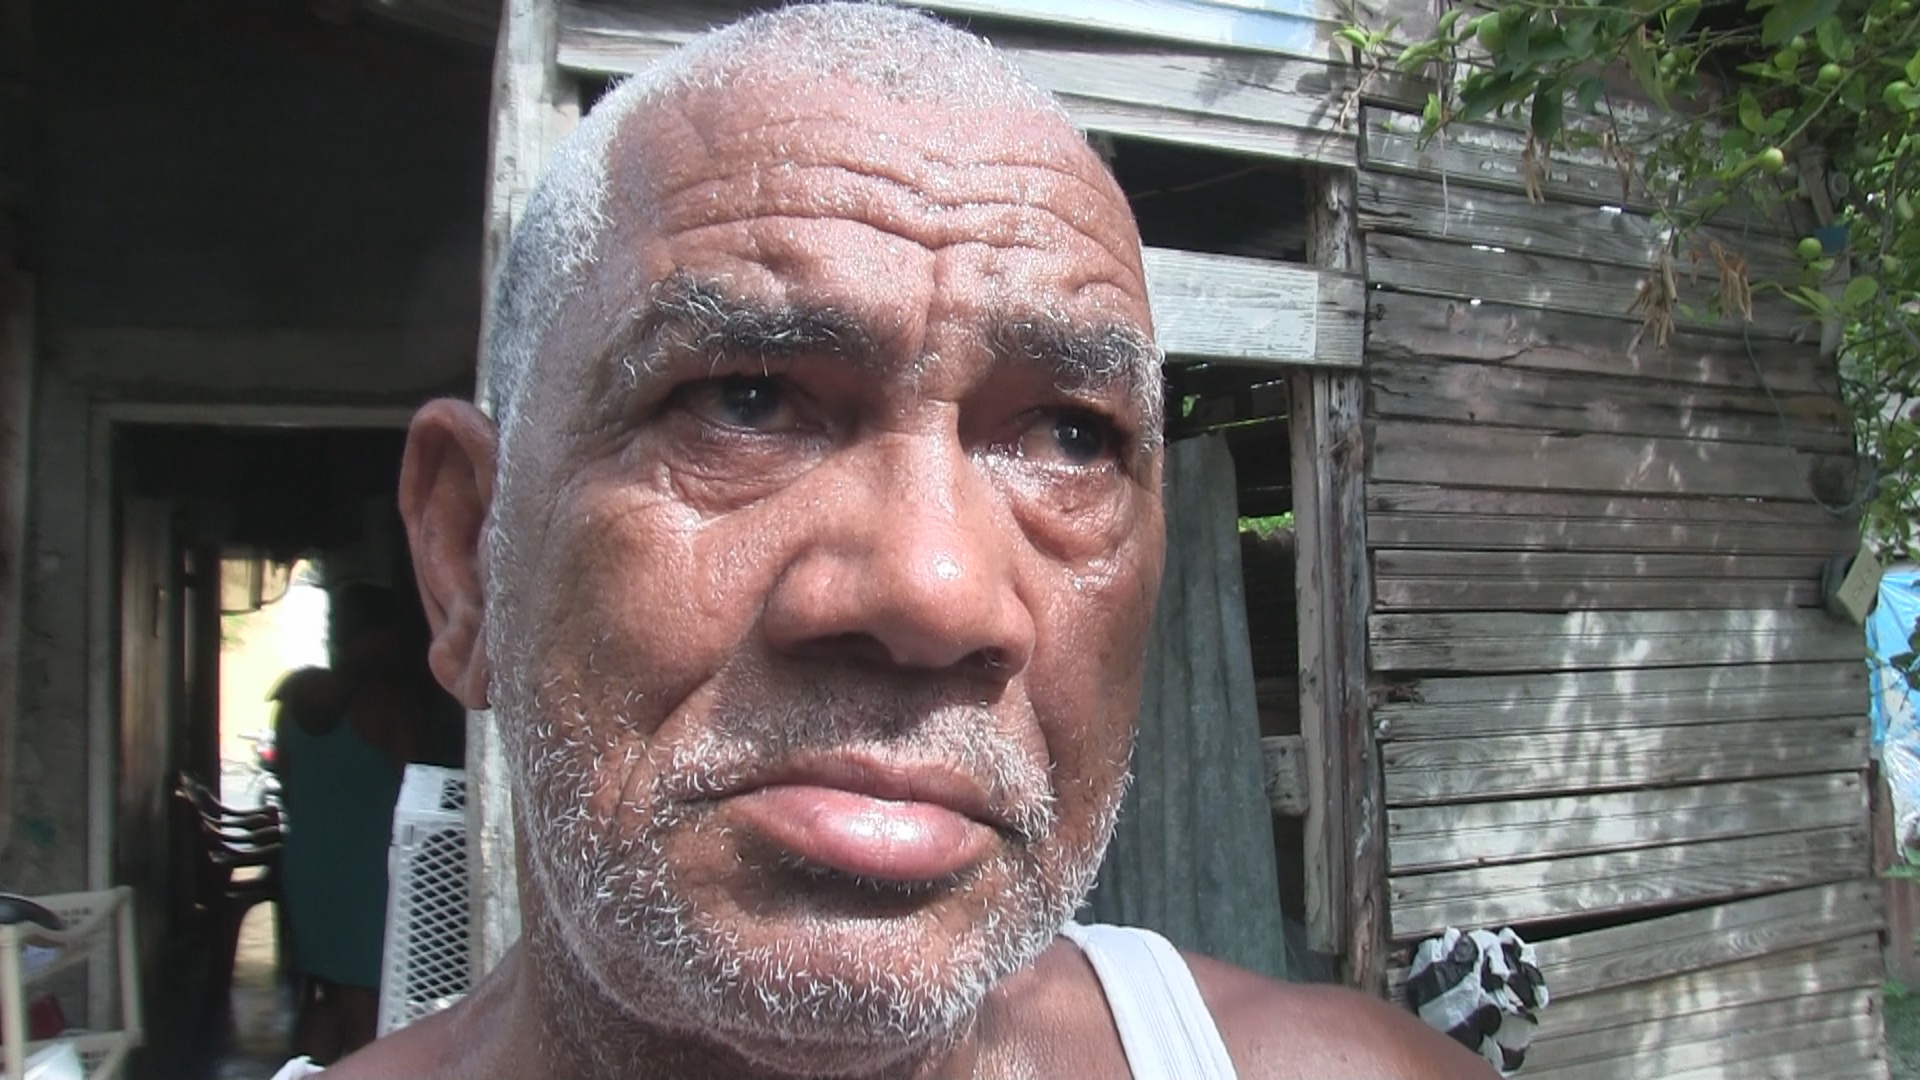 VIDEO: Dirigente PRM que sufrió trombosis con sus ojos llenos de lágrimas pide ayuda